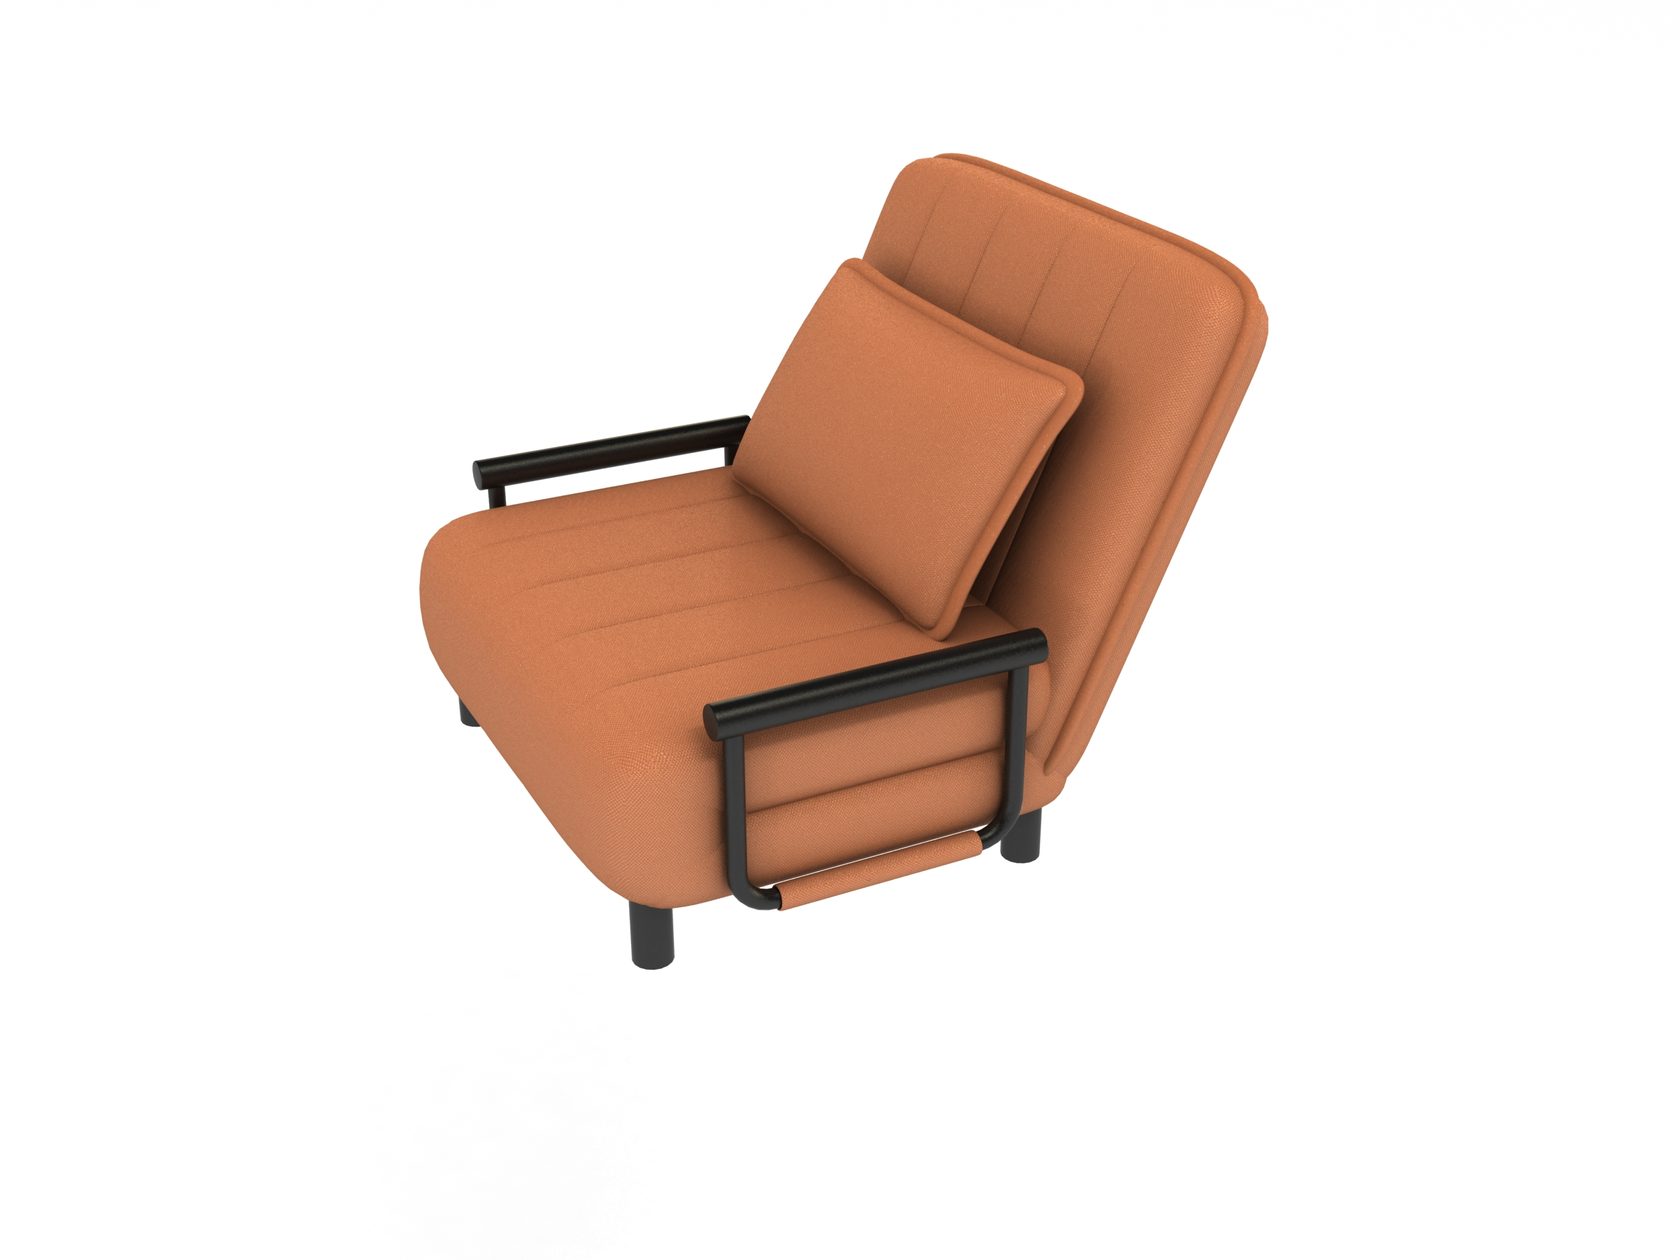 Кресла воронеж. Кресло раскладное Redford Вега. Кресло раскладное Redford Вега кр 0015. Кресло раскладное Redford "Вега", 1800х860х250 мм, кр 0015. Кресло раскладное Redford Вега кр 0015 оранжевый.